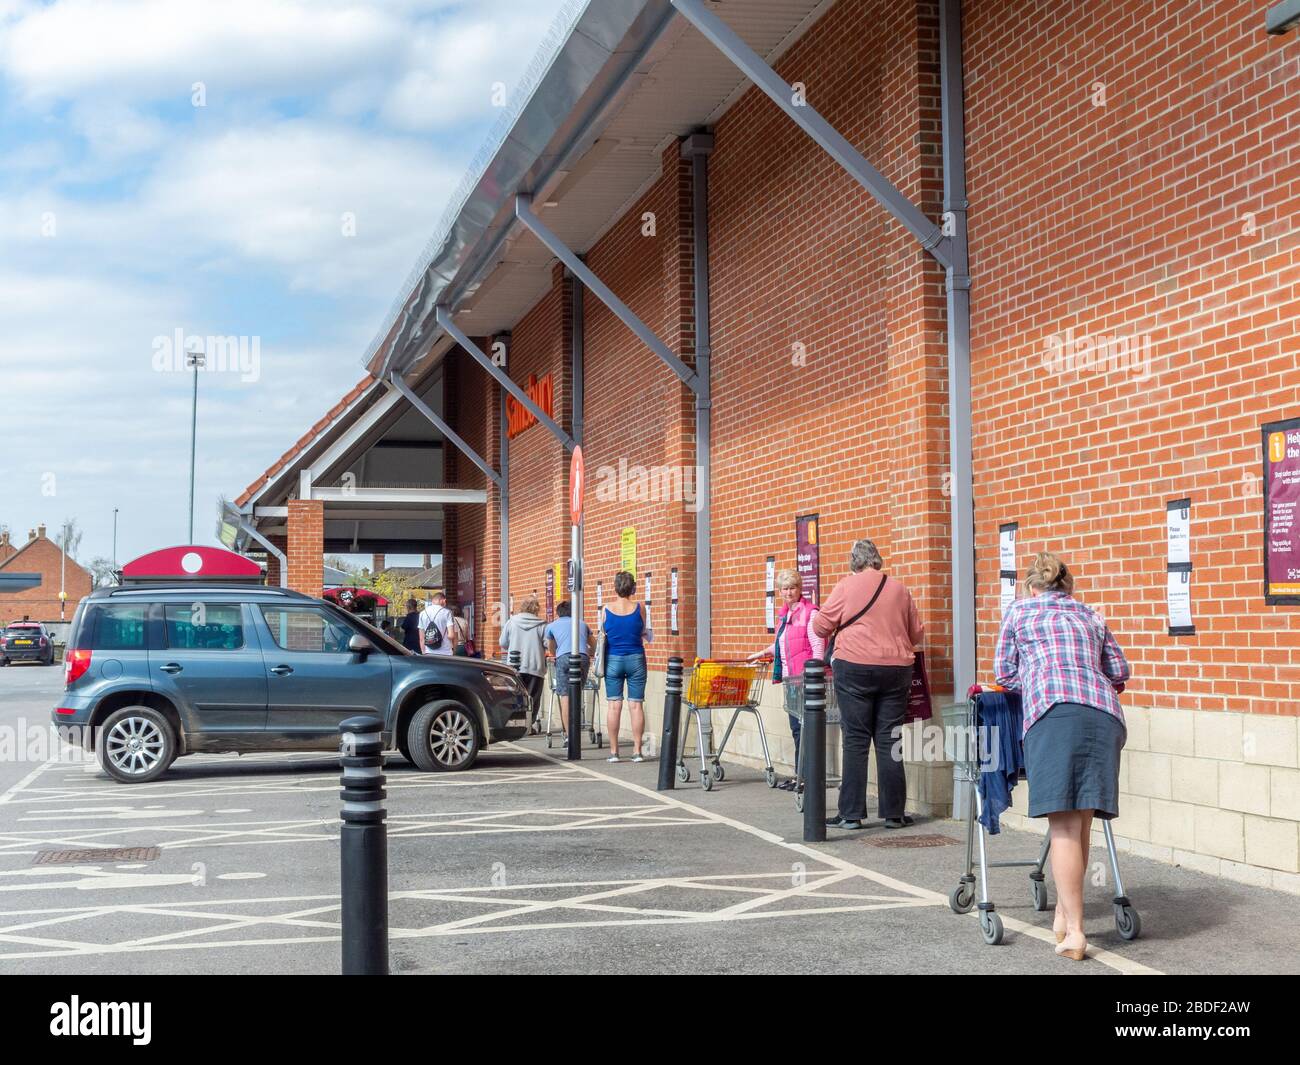 Pocklington, East Yorkshire, UK, 04/08/2020 - una coda di acquirenti presso un supermercato locale Sainsbury's mantenere la loro distanza. Foto Stock